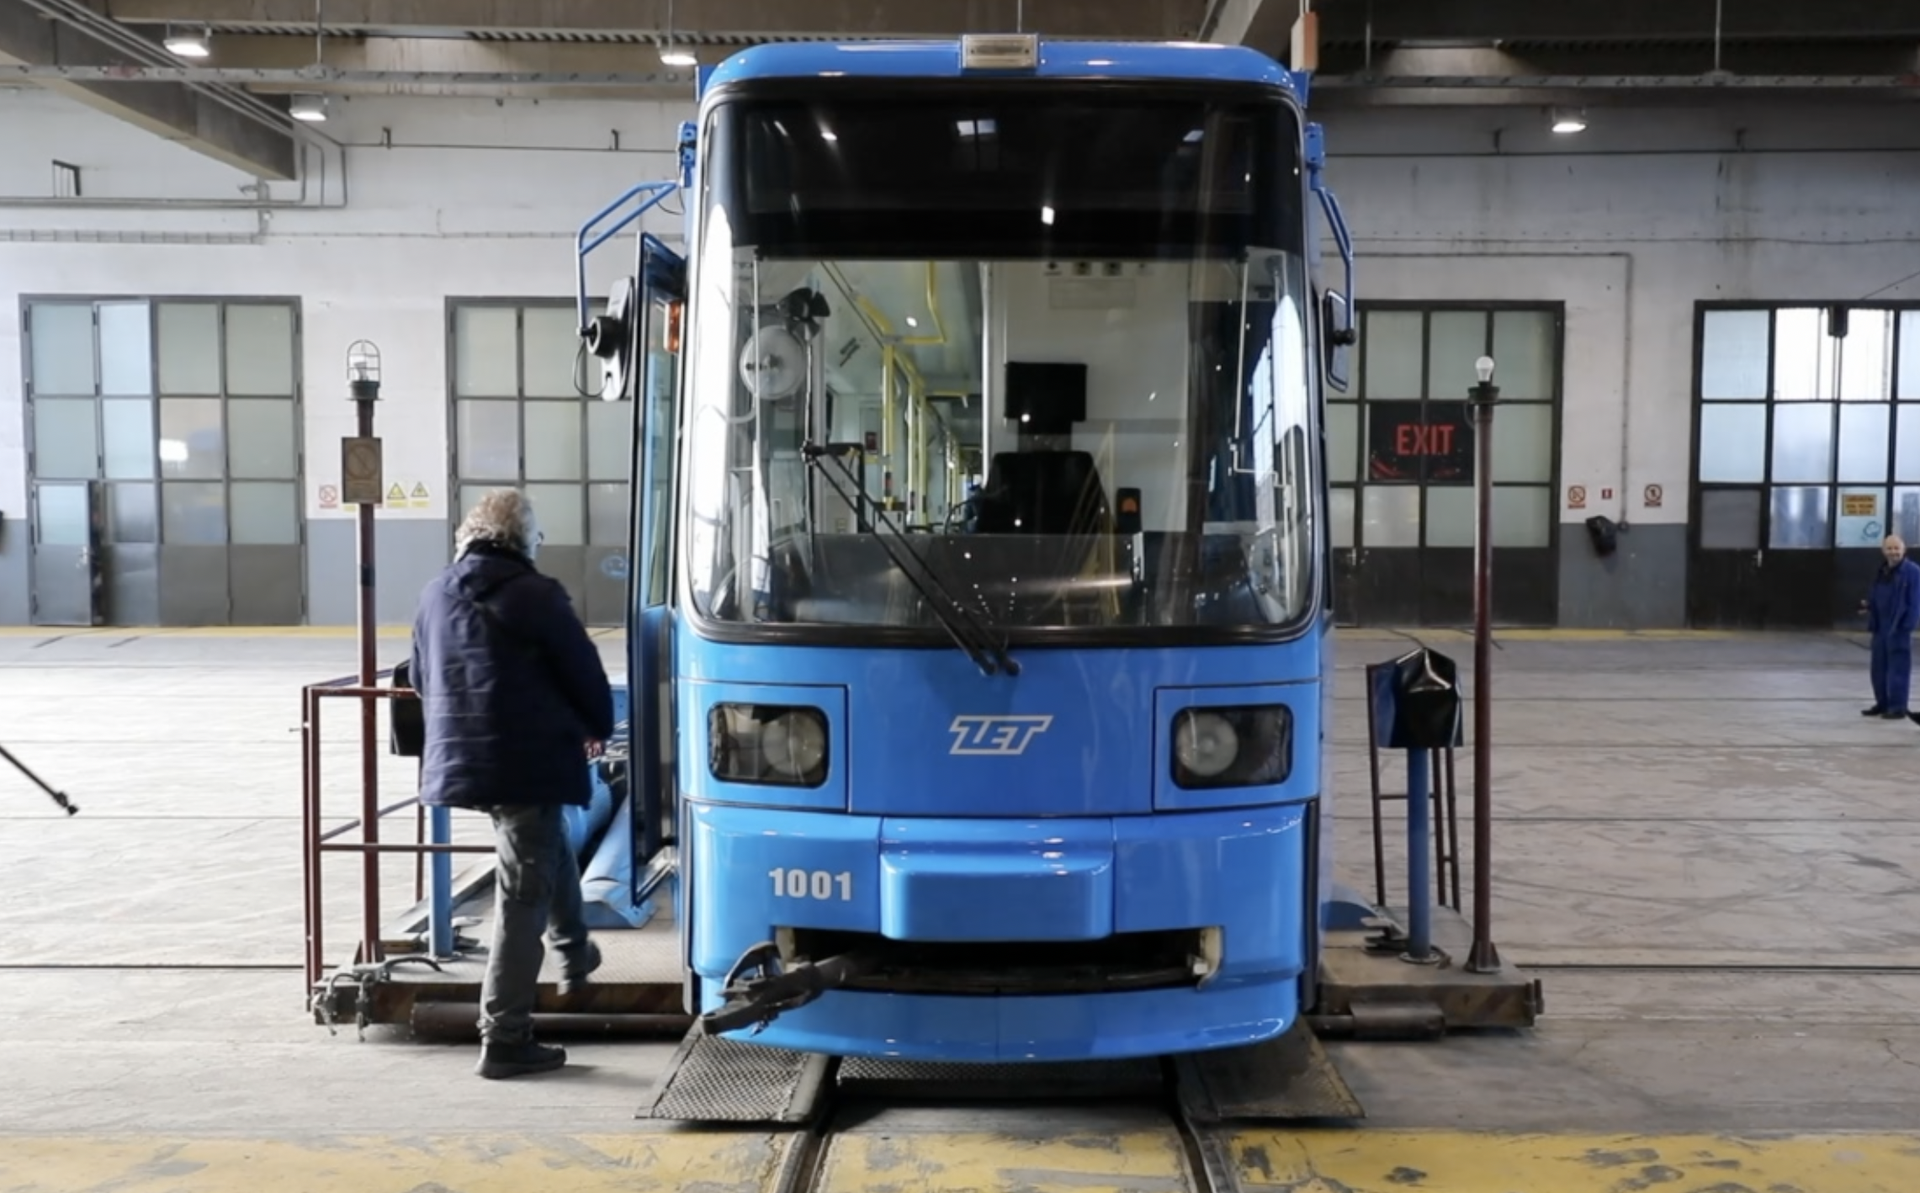 Prvi rabljeni njemački tramvaj od srijede će voziti po Zagrebu